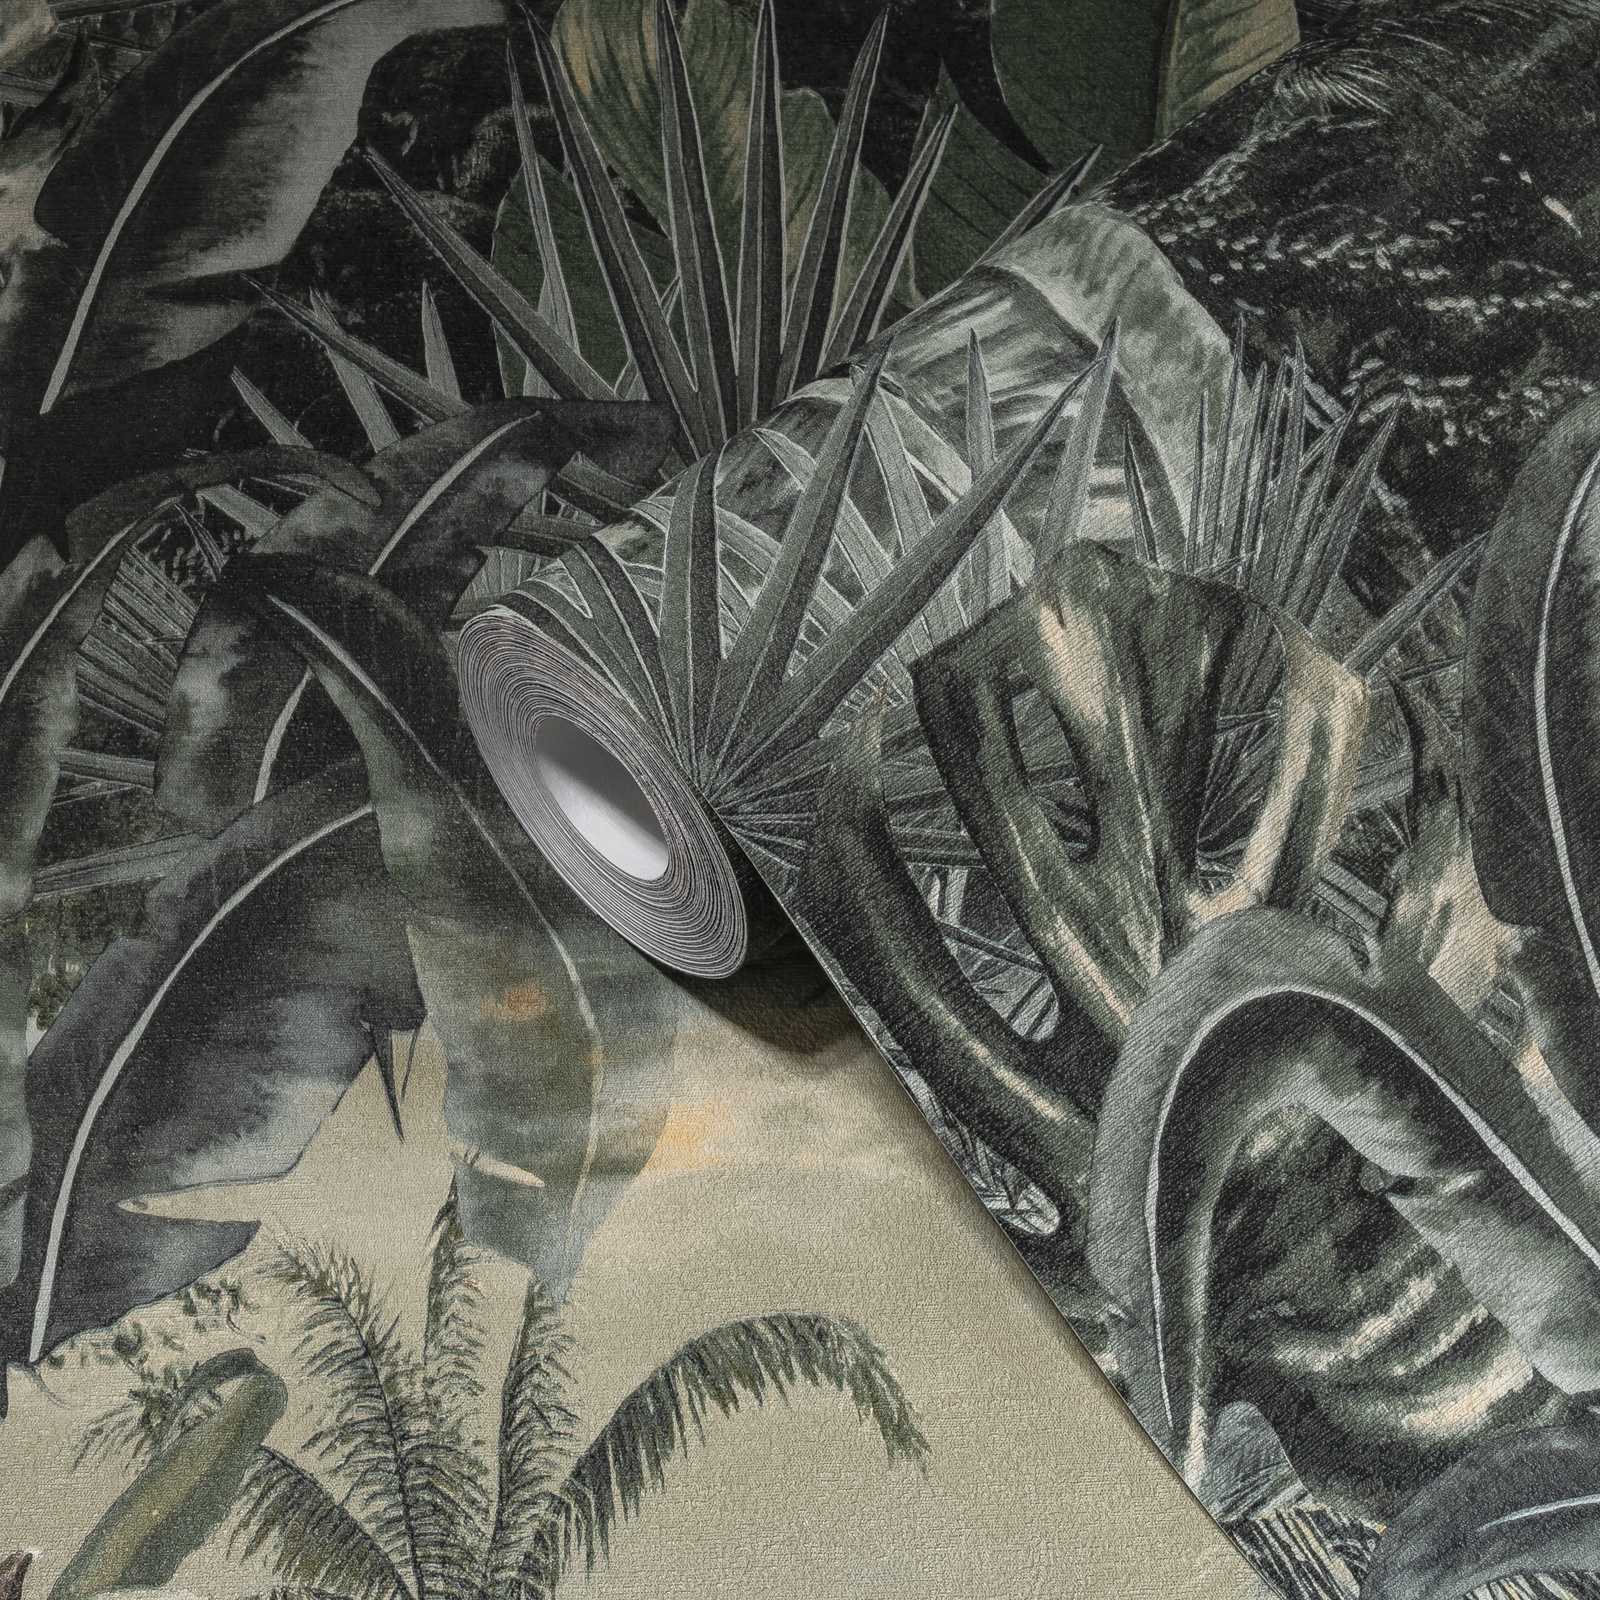             Palm behang jungle patroon, moderne koloniale stijl - groen
        